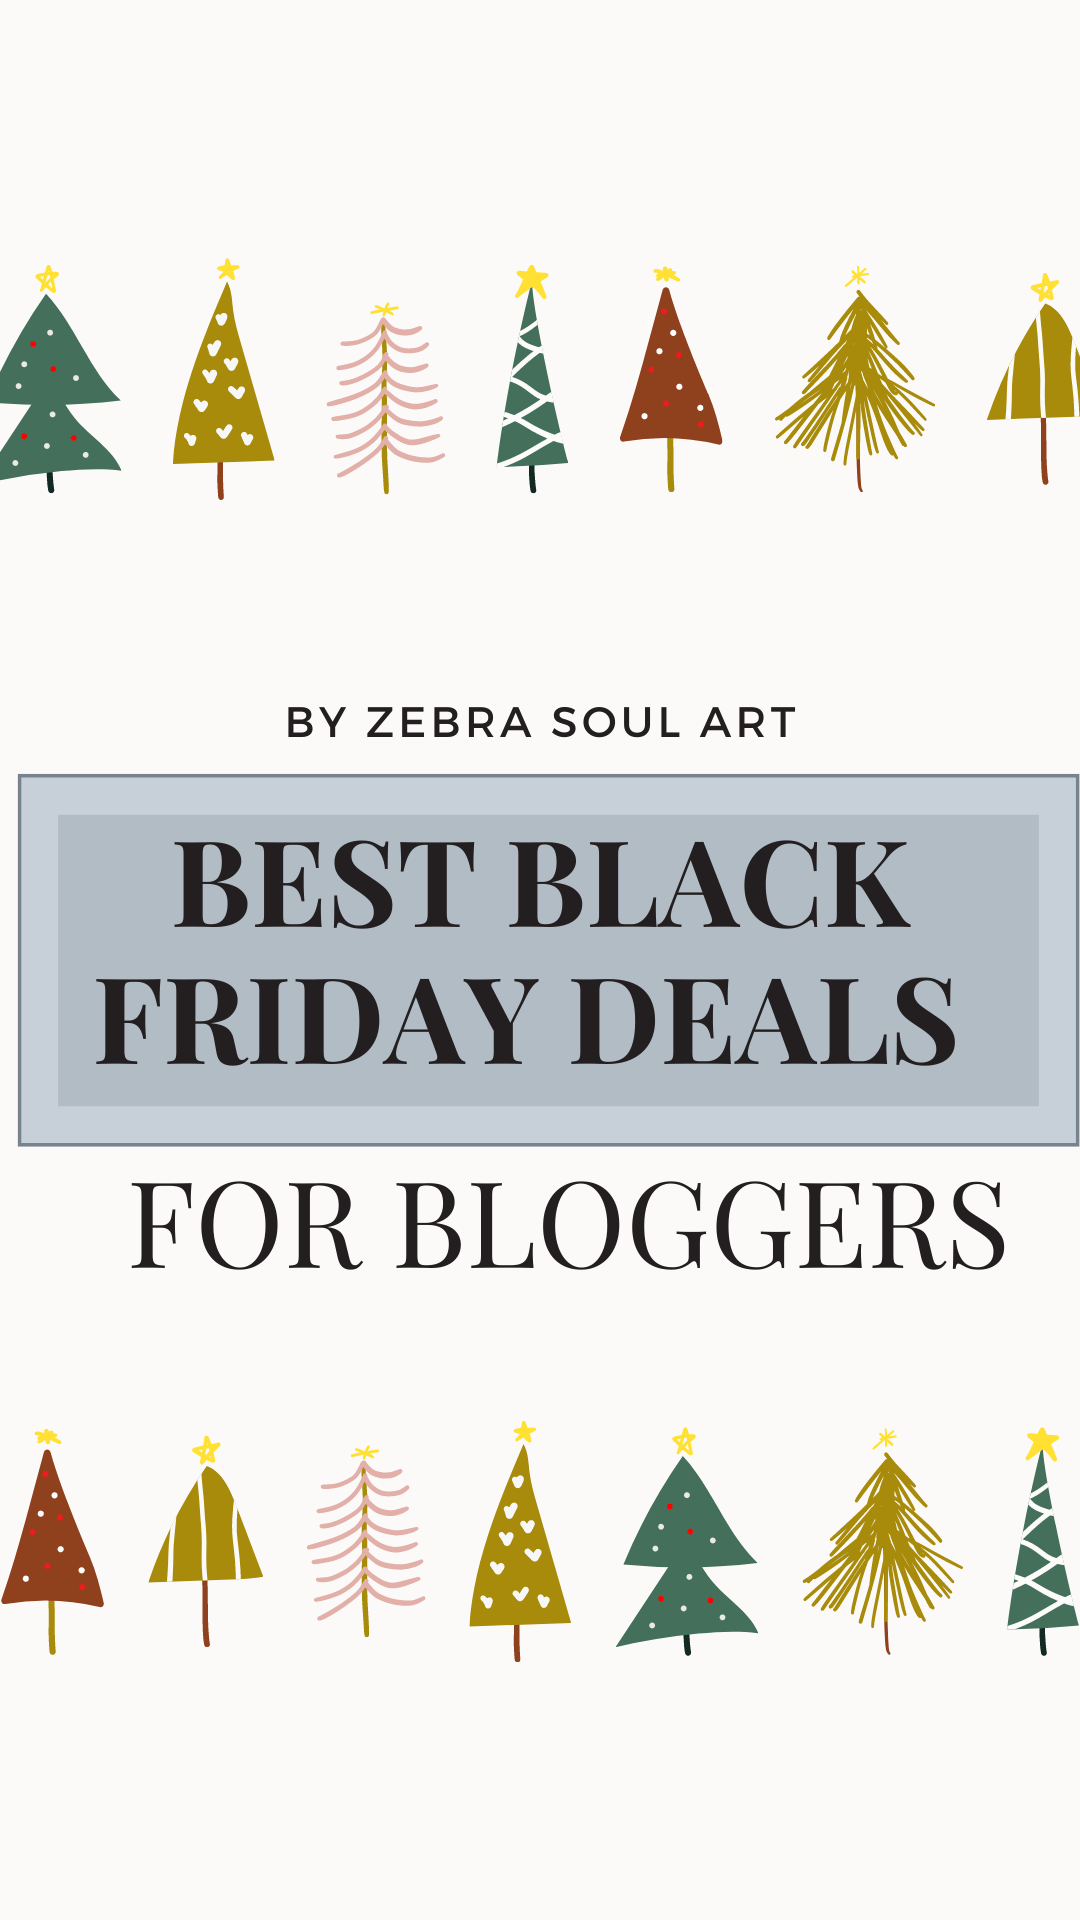 BLACK friday deals bloggers course creators